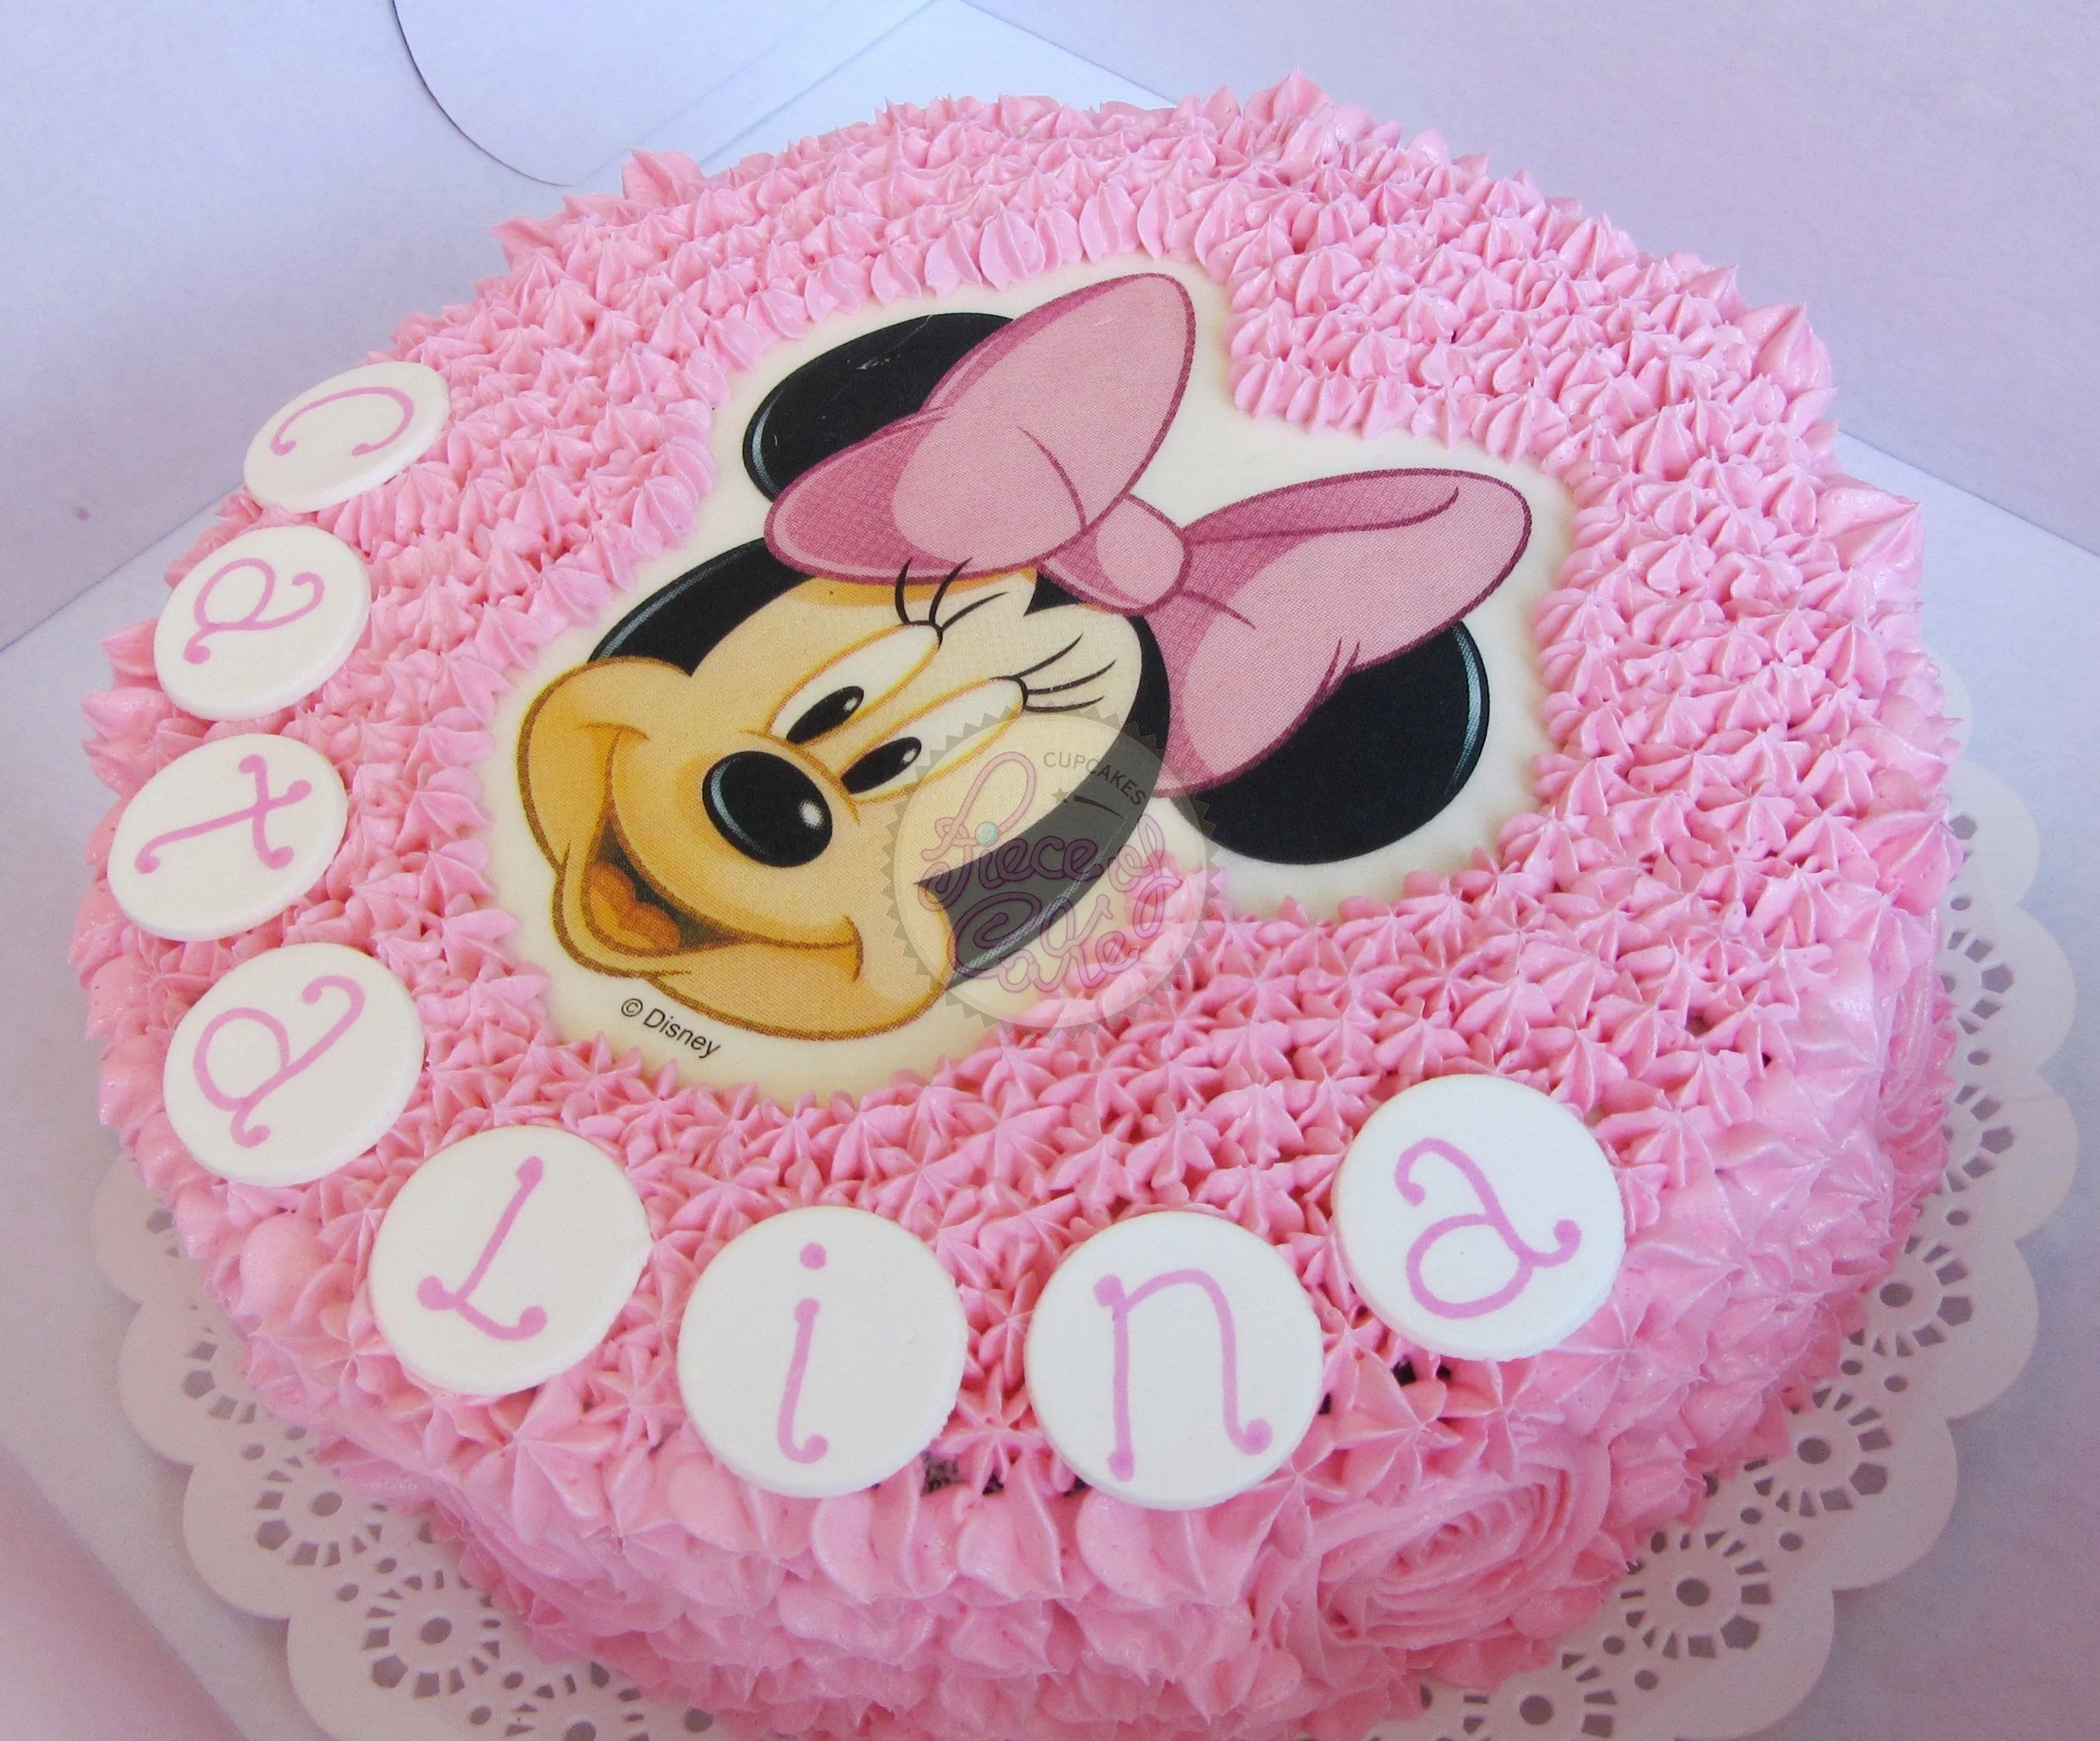 Torta con Minnie Mouse - Imagui